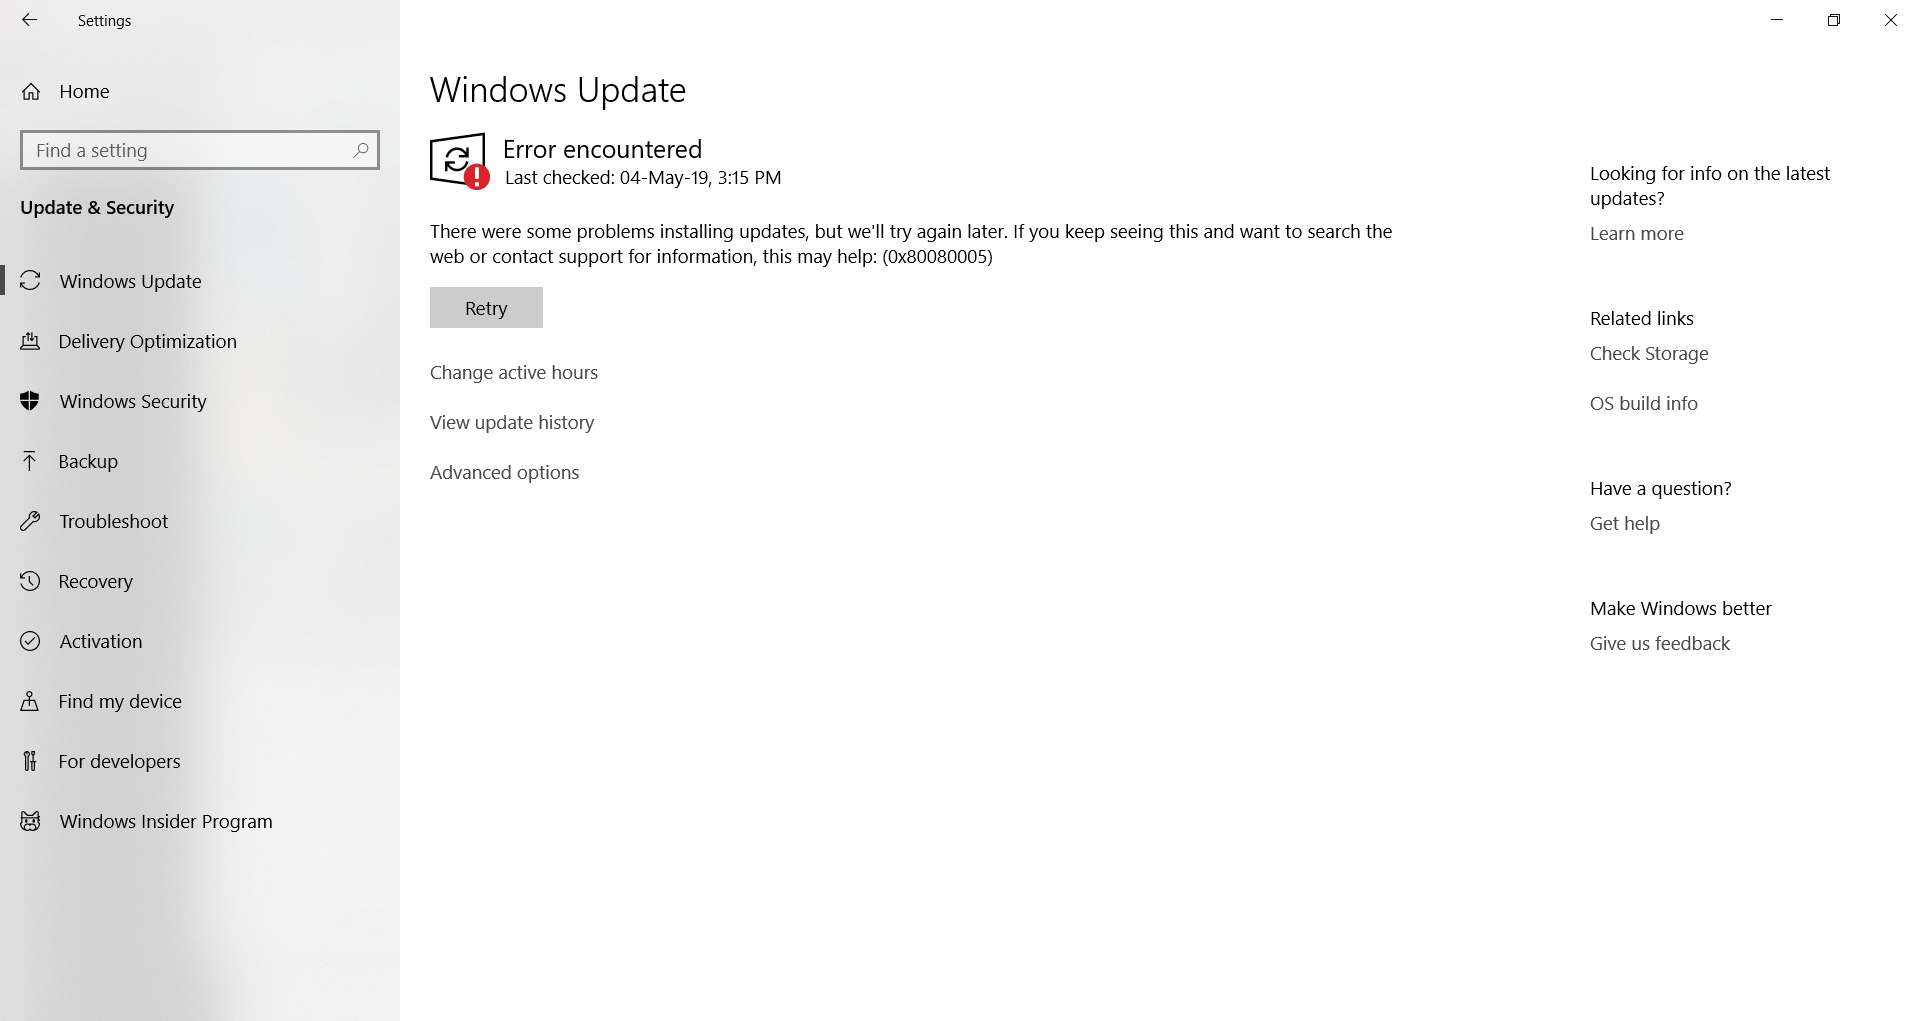 Window update error 933122dd-07b6-473a-b577-6cec68676d72?upload=true.png